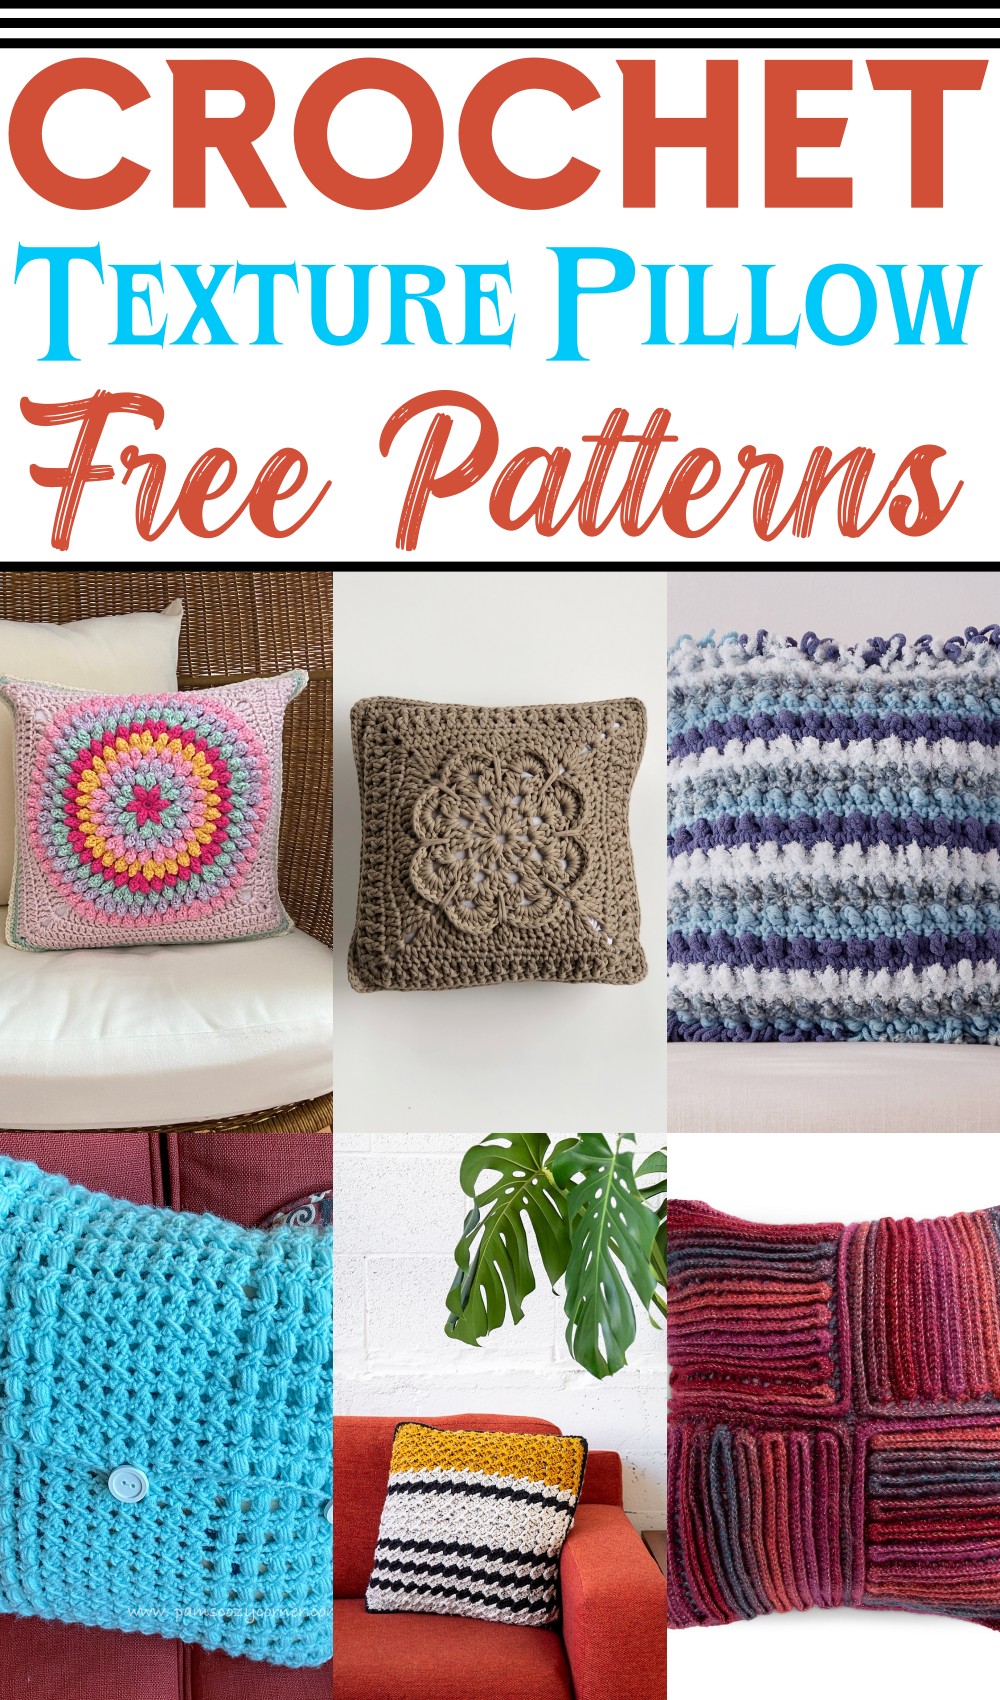 Free Crochet Texture Pillow Patterns